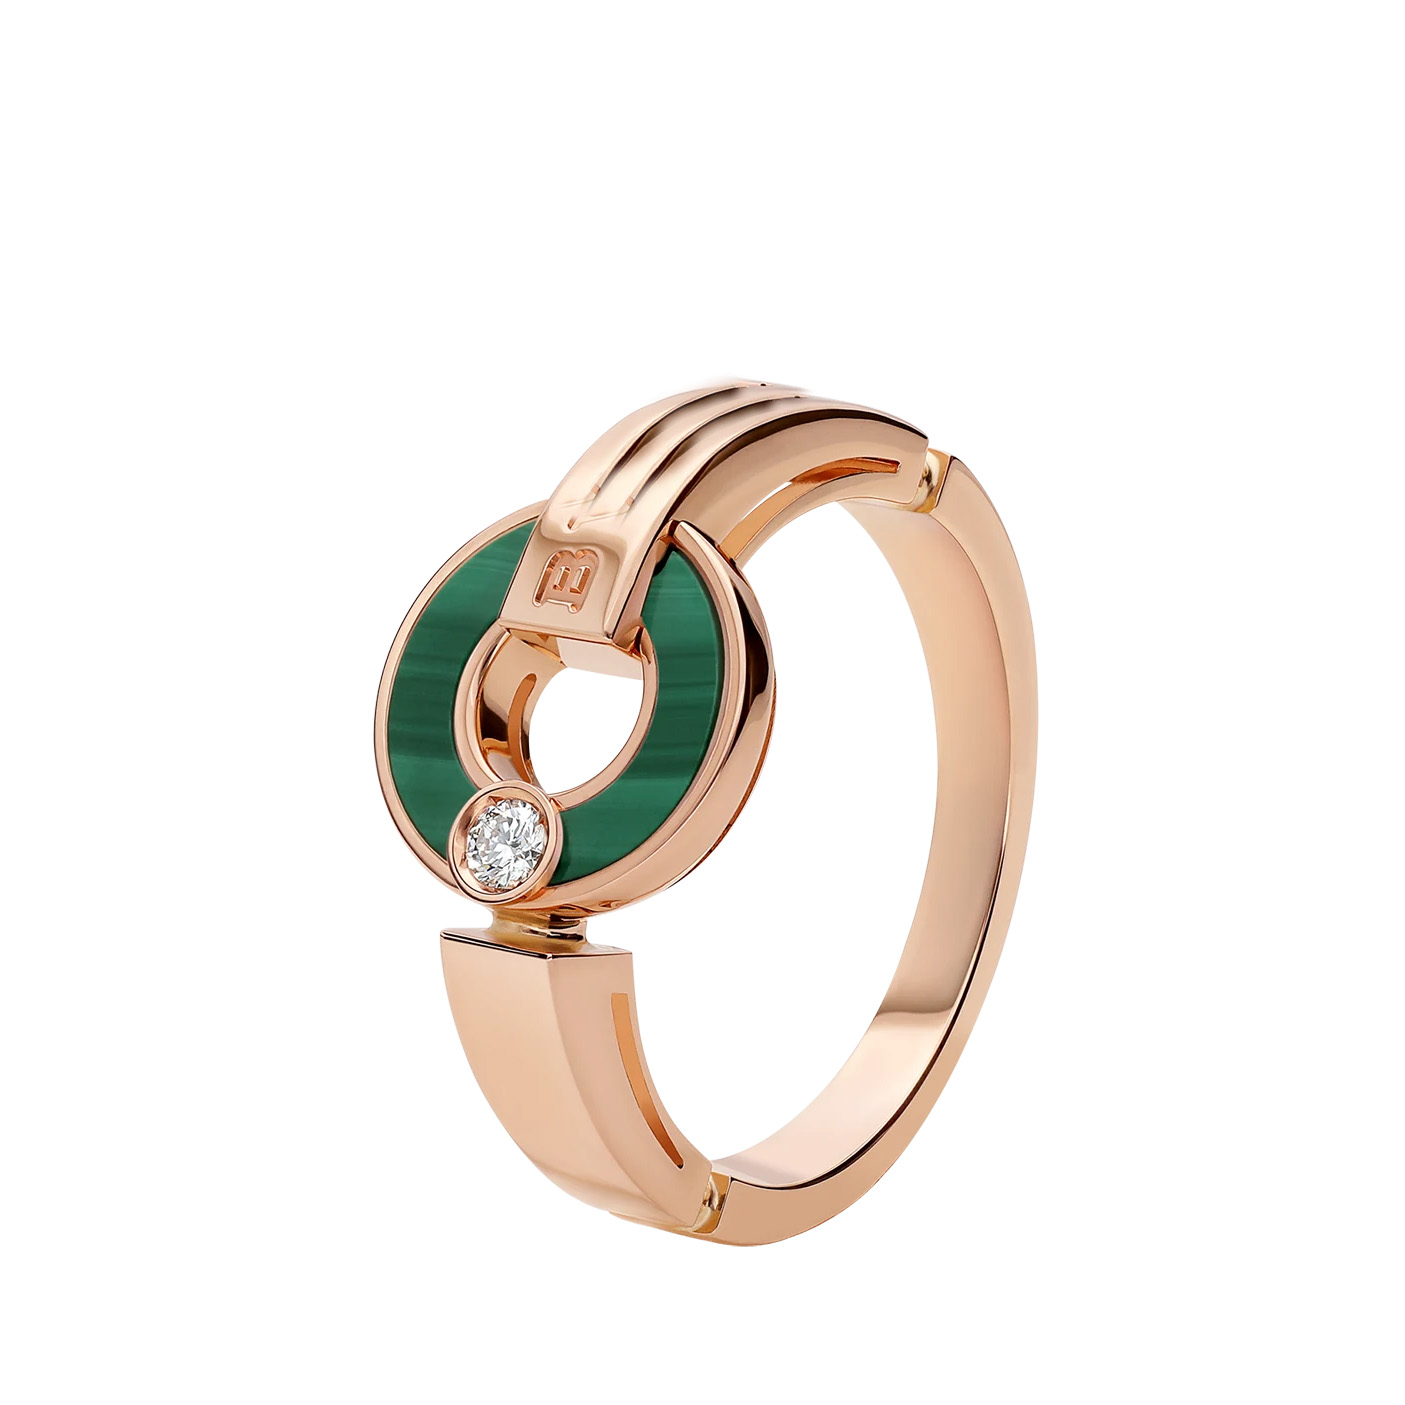 Velkoobchod OEM/ODM šperky Vlastní design Prolamovaný prsten z 18kt růžového zlata s prvky malachitu a kulatým briliantovým diamantem OEM výrobce šperků